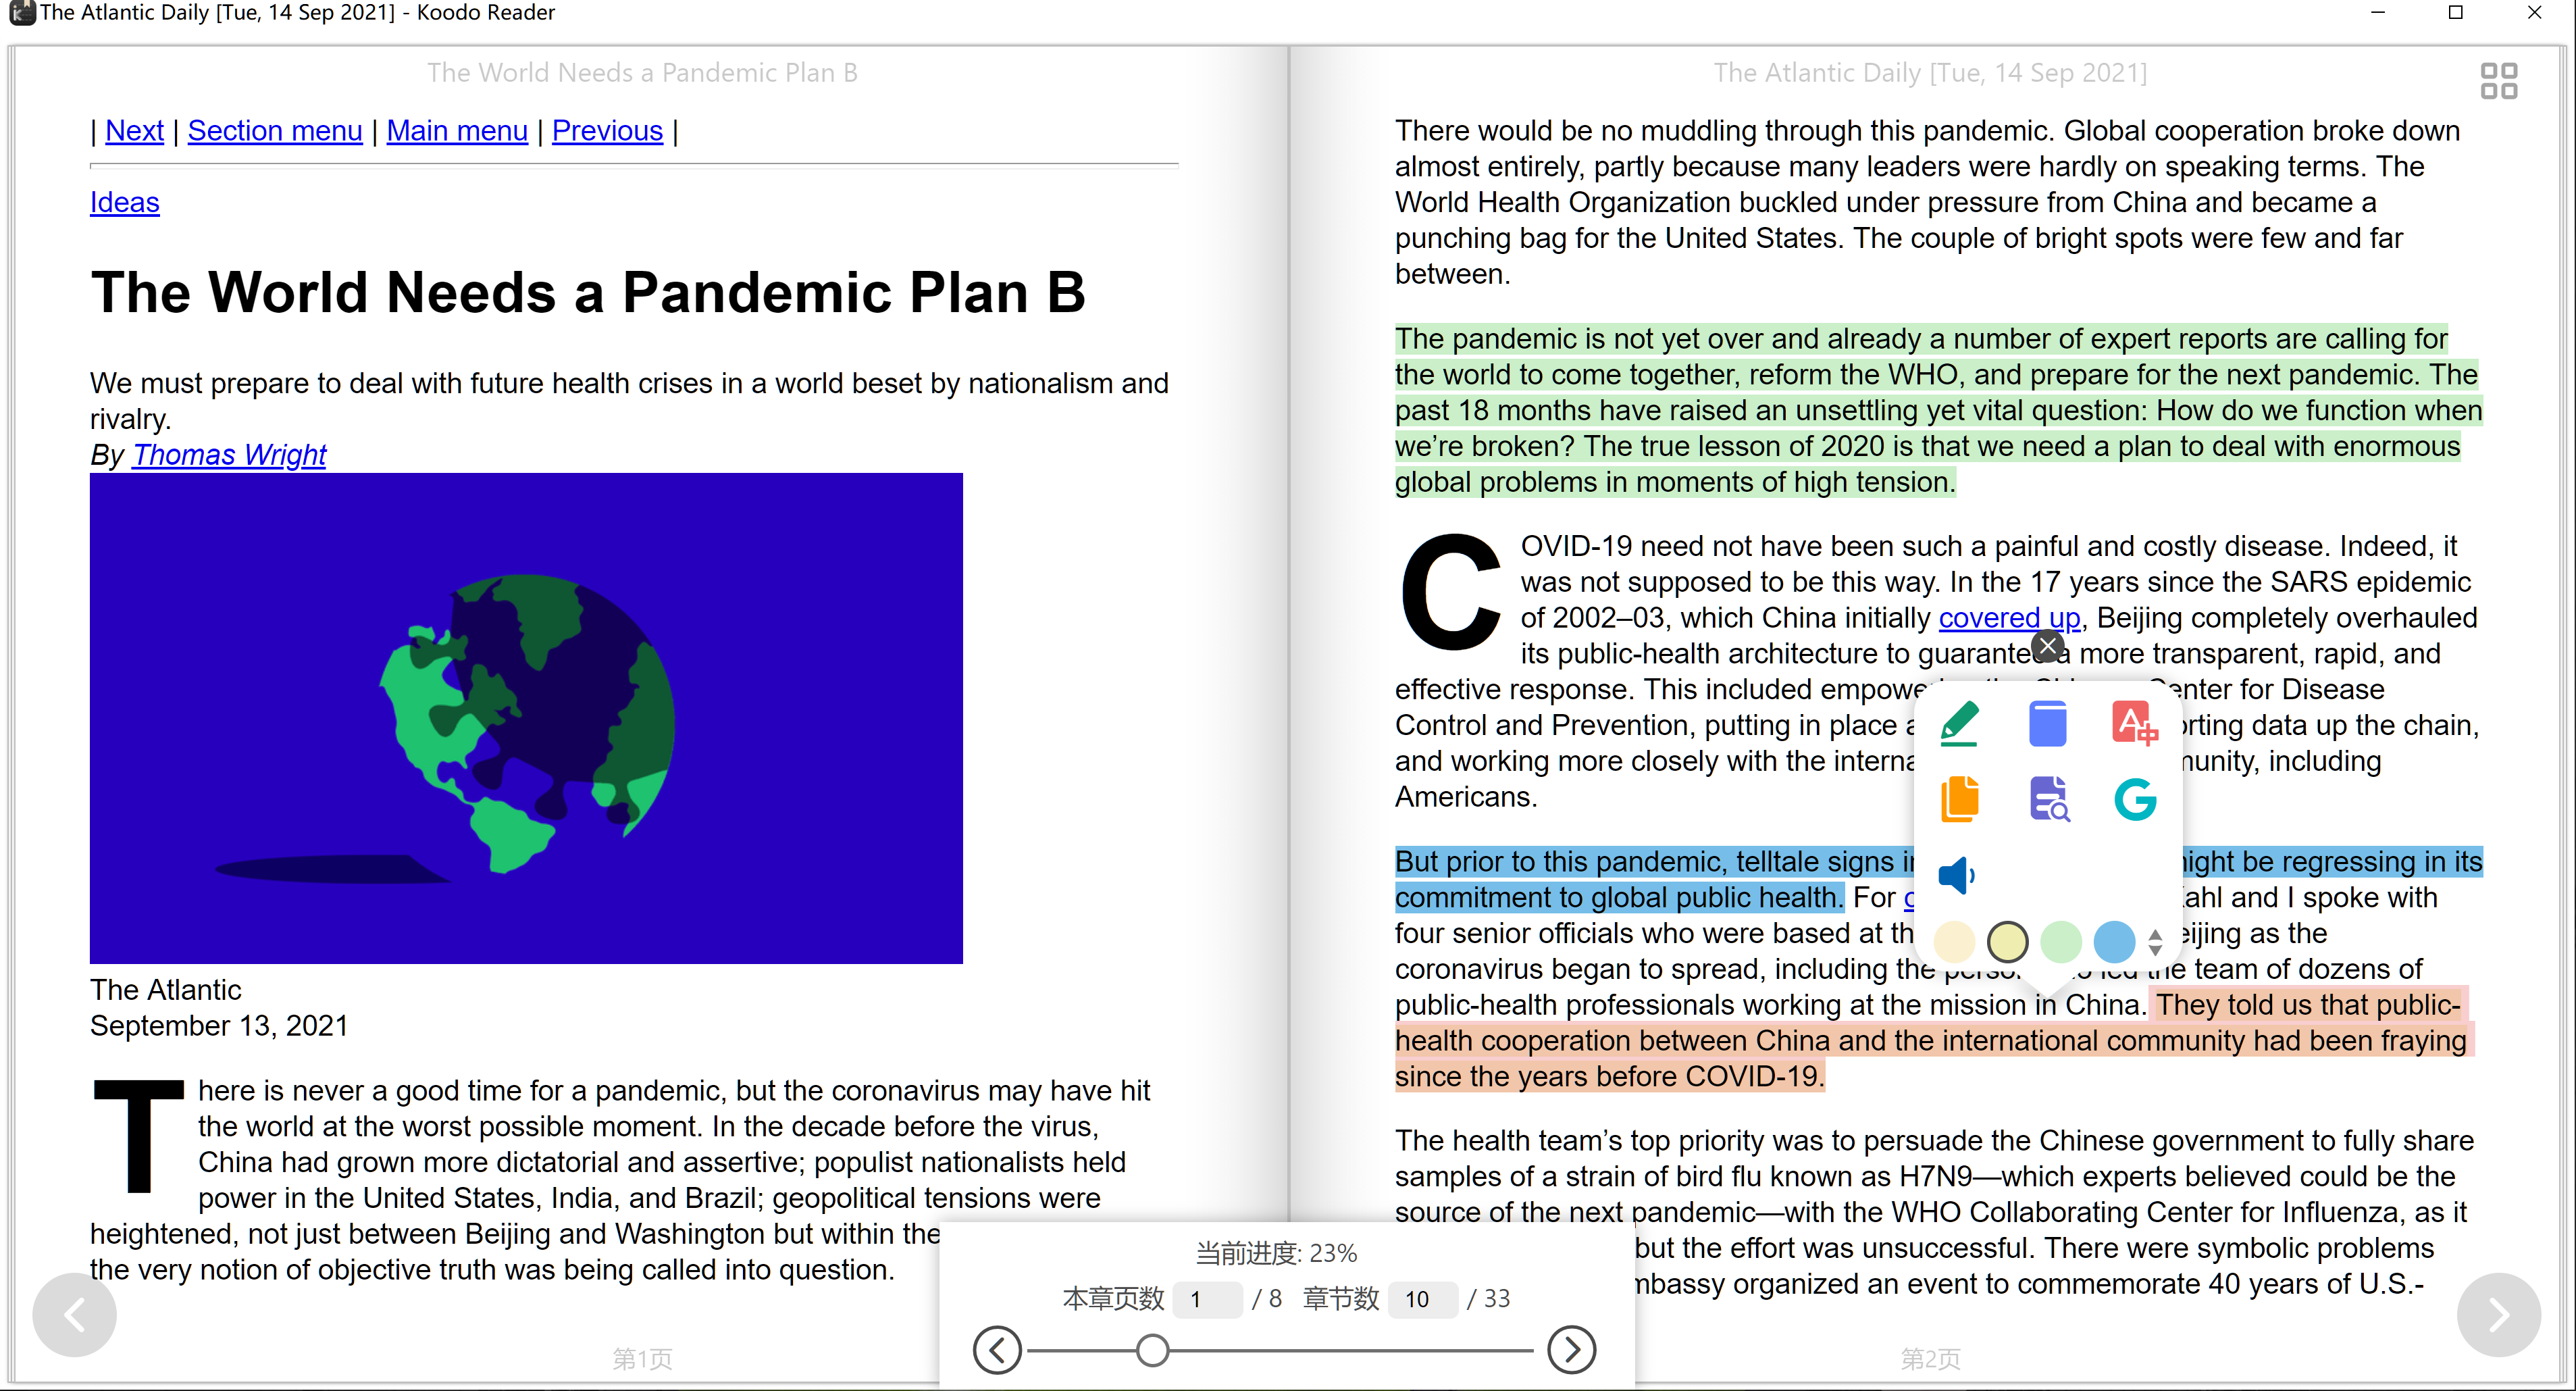 一款优秀的跨平台电子书阅读器：Koodo Reader 支持epub mobi pdf等格式